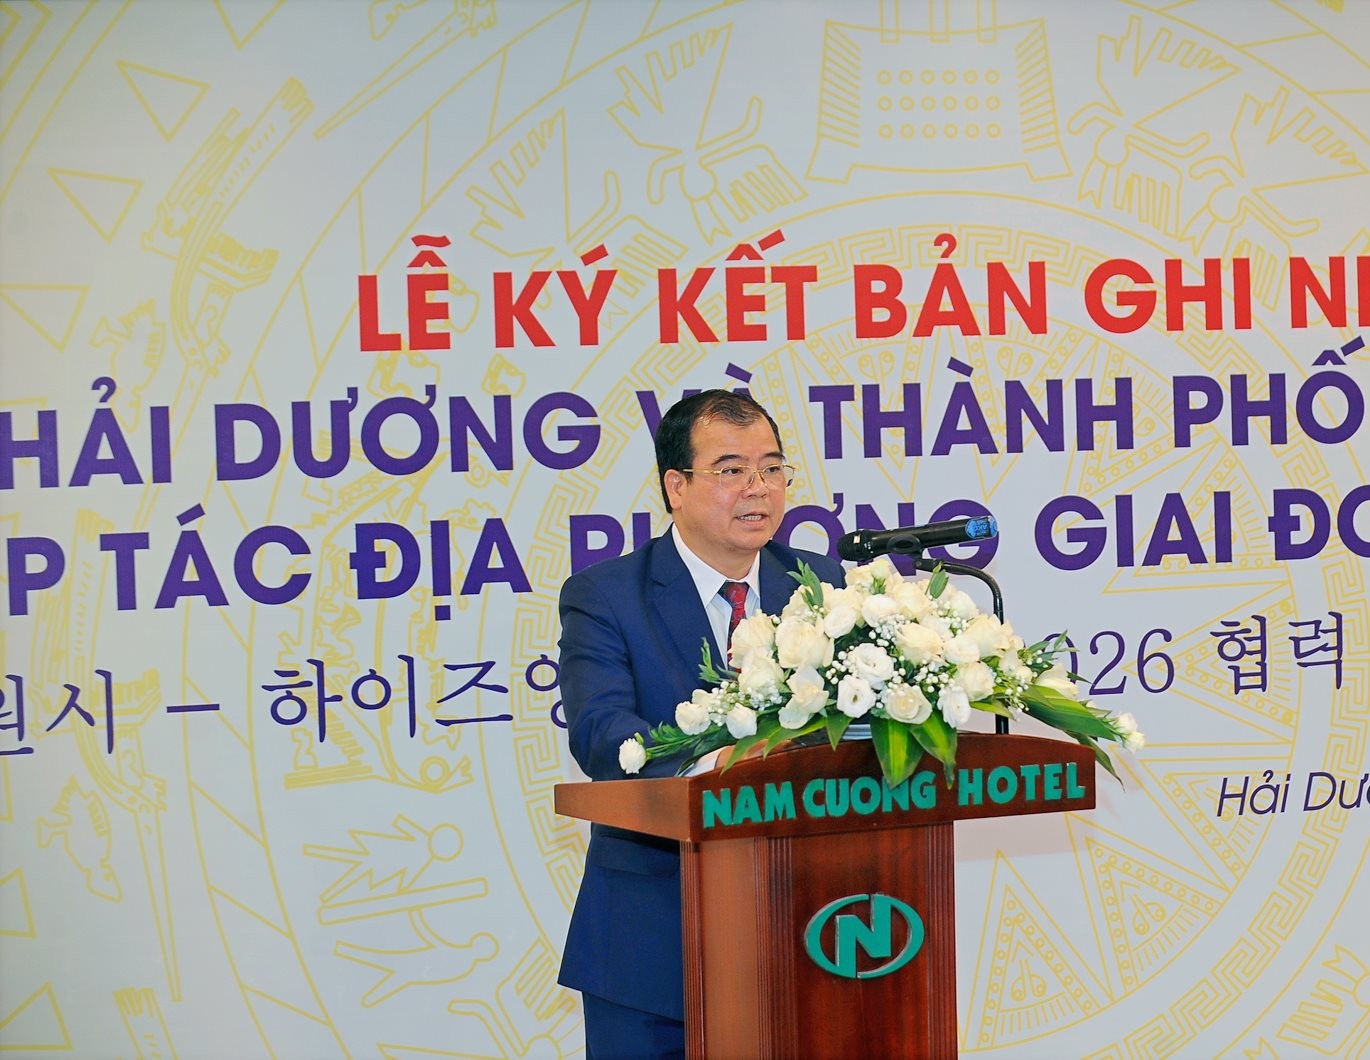 Ông Nguyễn Minh Hùng, Phó Chủ tịch UBND tỉnh Hải Dương phát biểu tại lễ ký kết